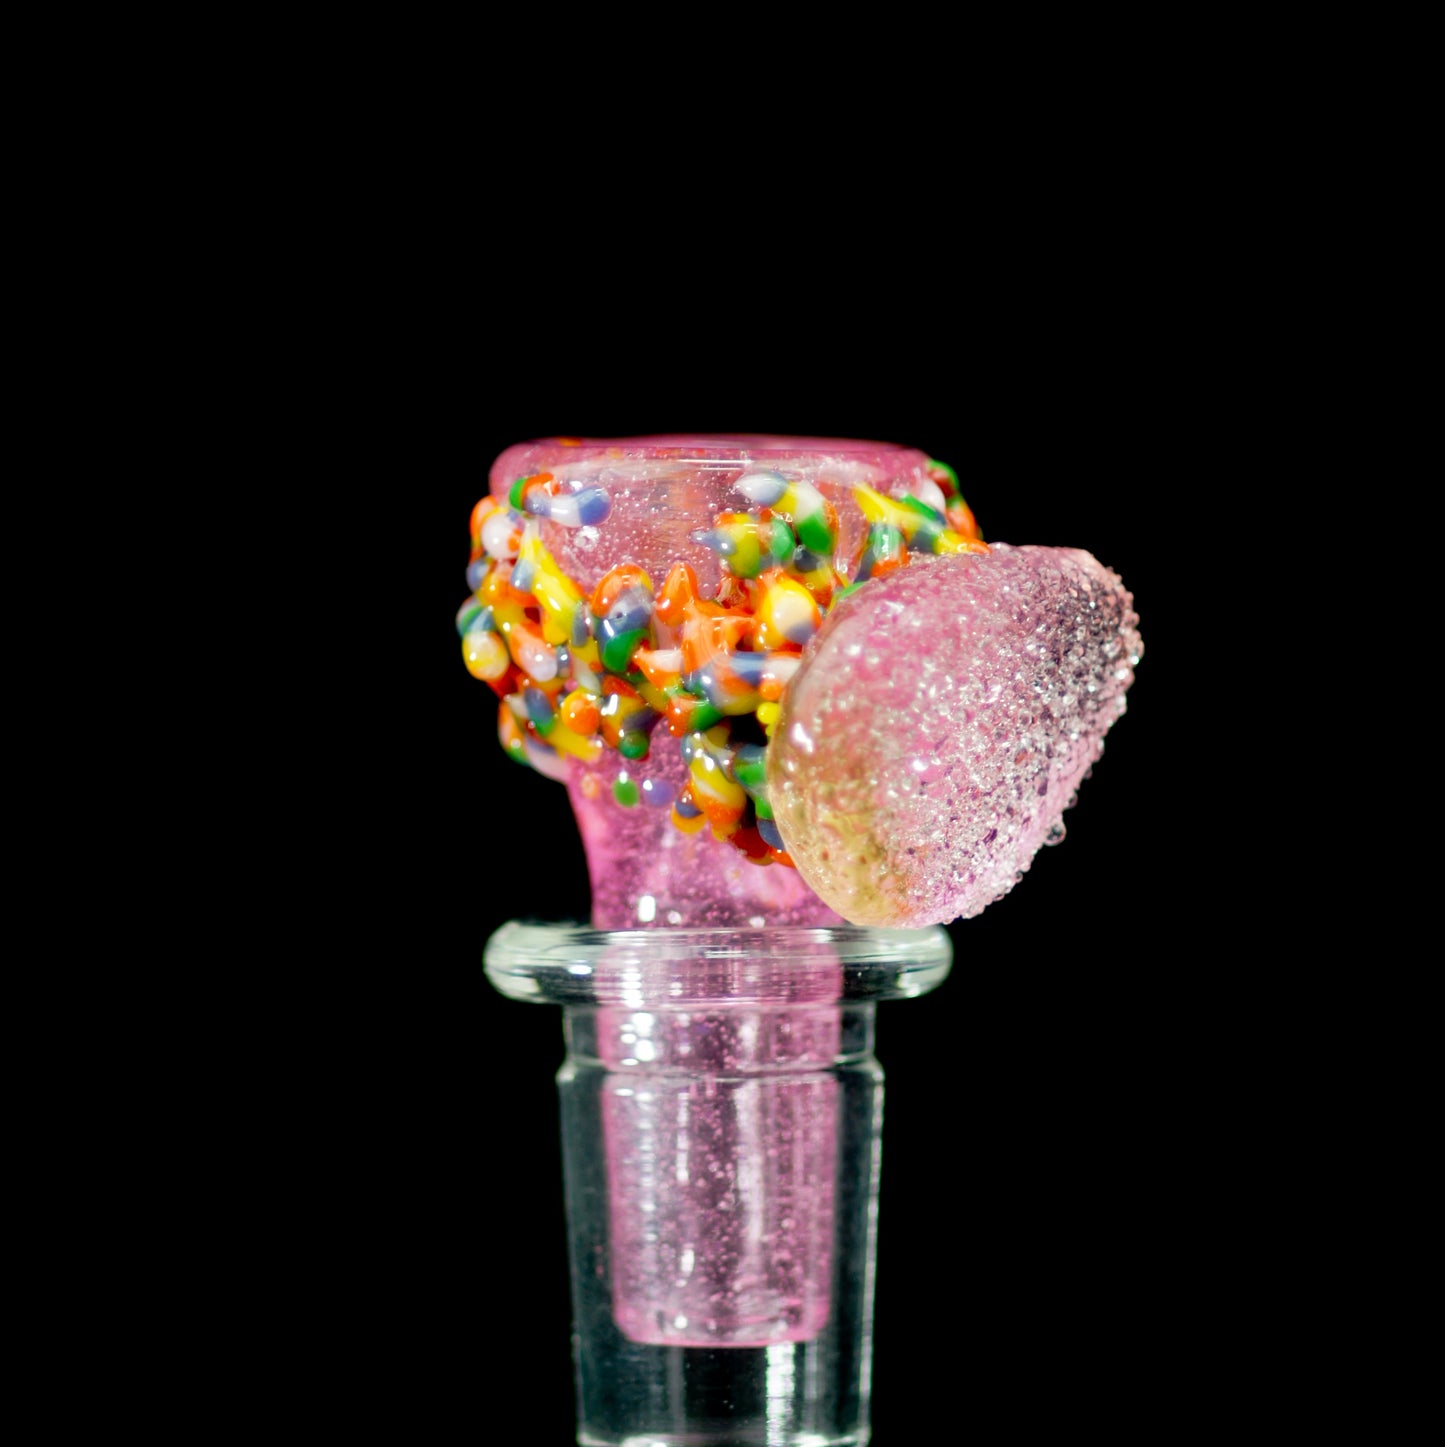 Mctrivish Glass x Nez Glass - Diapositive couleur Candy x Nerds de 14 mm - 5